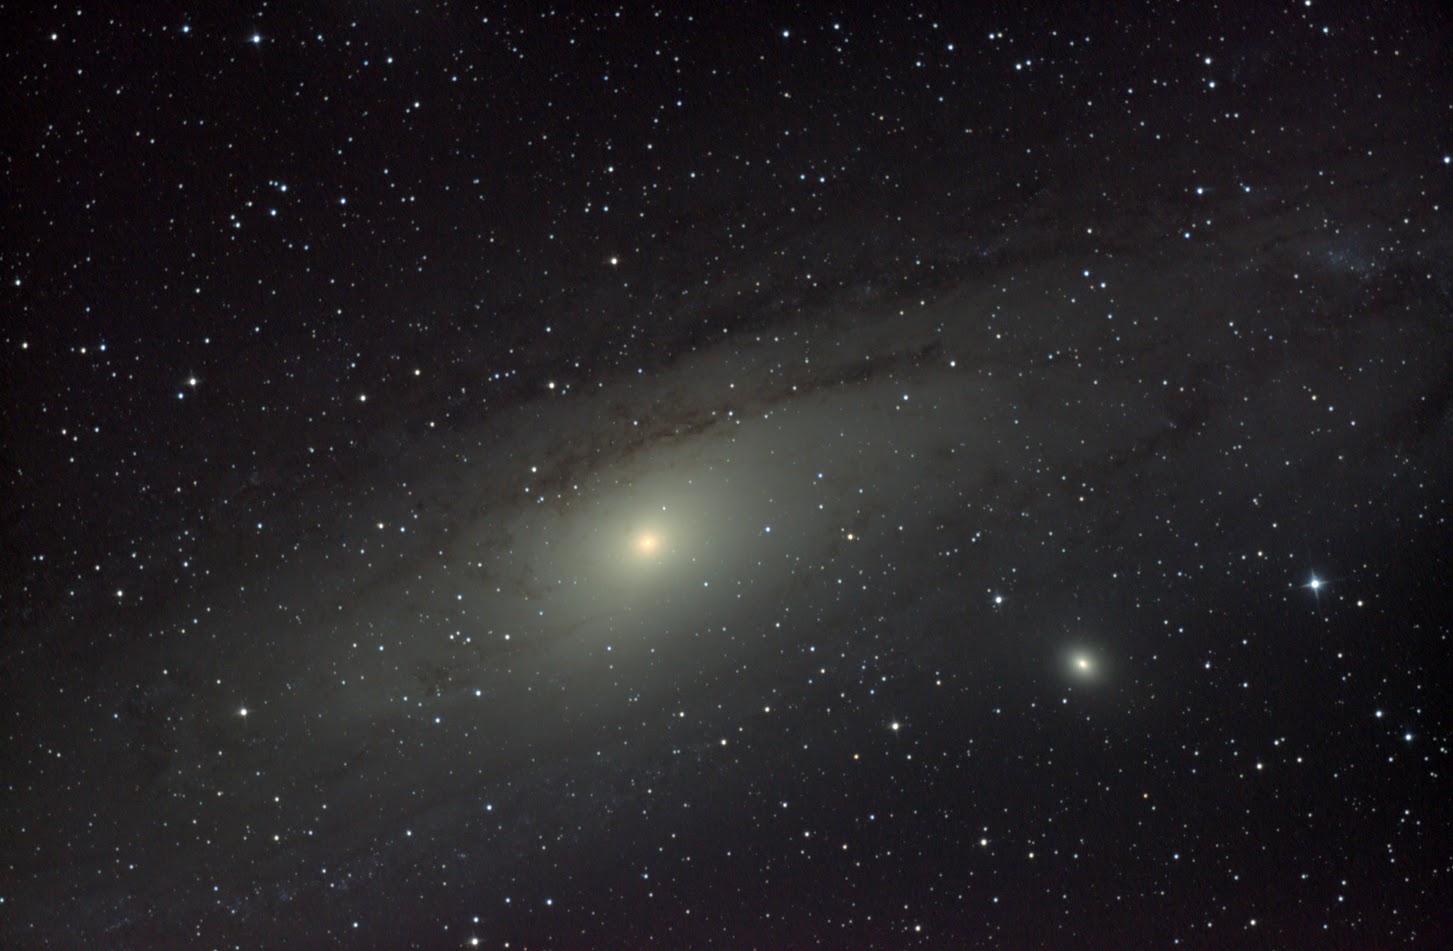 Спиральная  галактика  Мессье 31  "Туманность Андромеды".  Фото: Павел Григорьев.